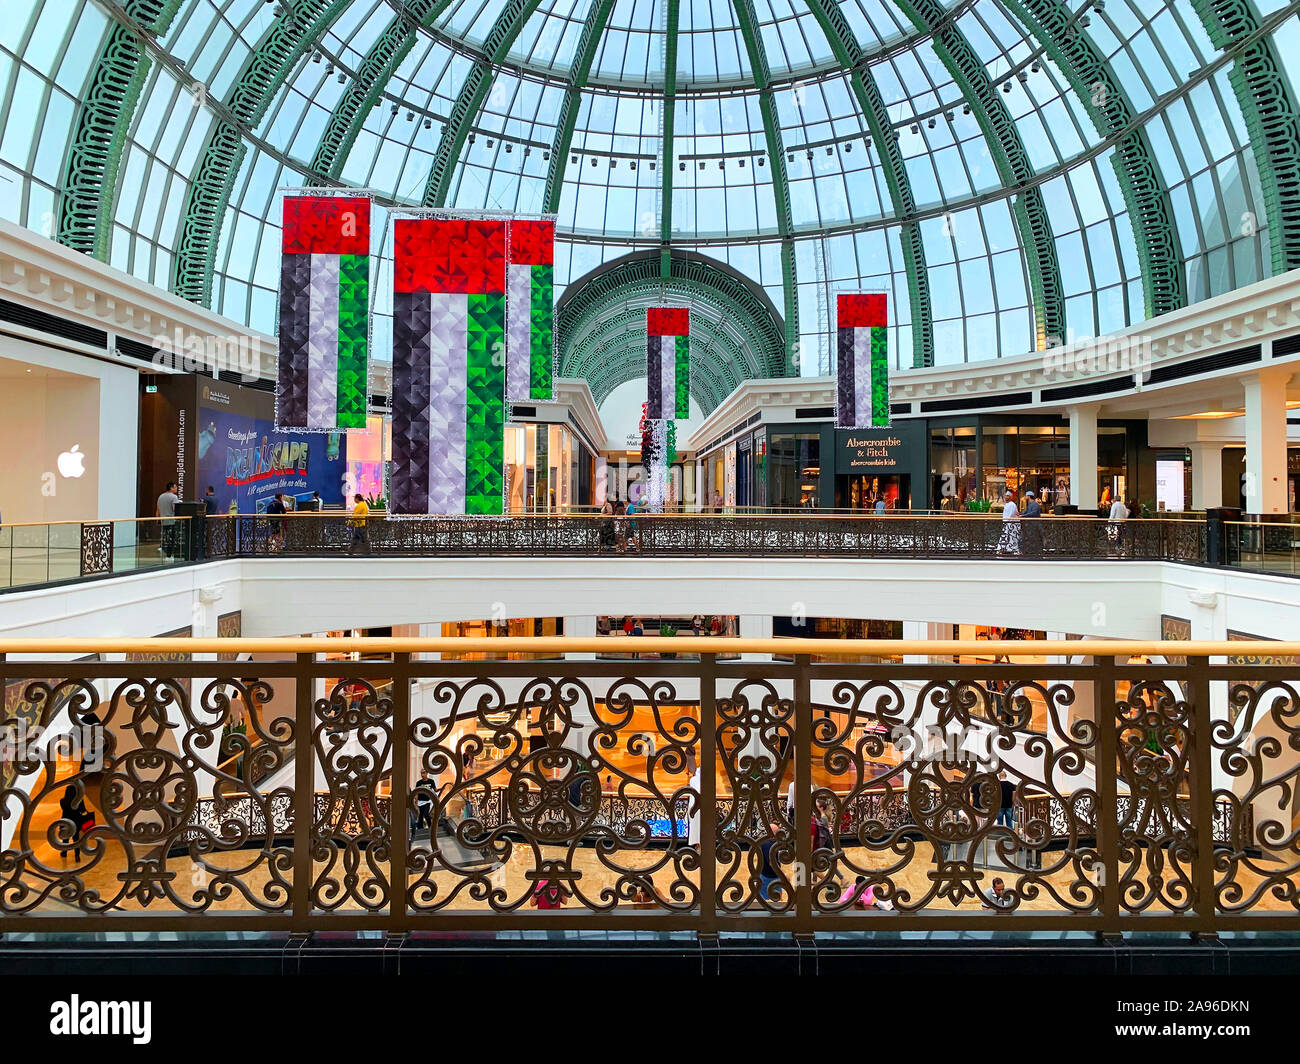 Dubaï / Emirats arabes unis - 10 novembre 2019 : centre commercial Mall of the Emirates décorations pour Fête Nationale. Décoration drapeaux nationaux des EAU. Banque D'Images